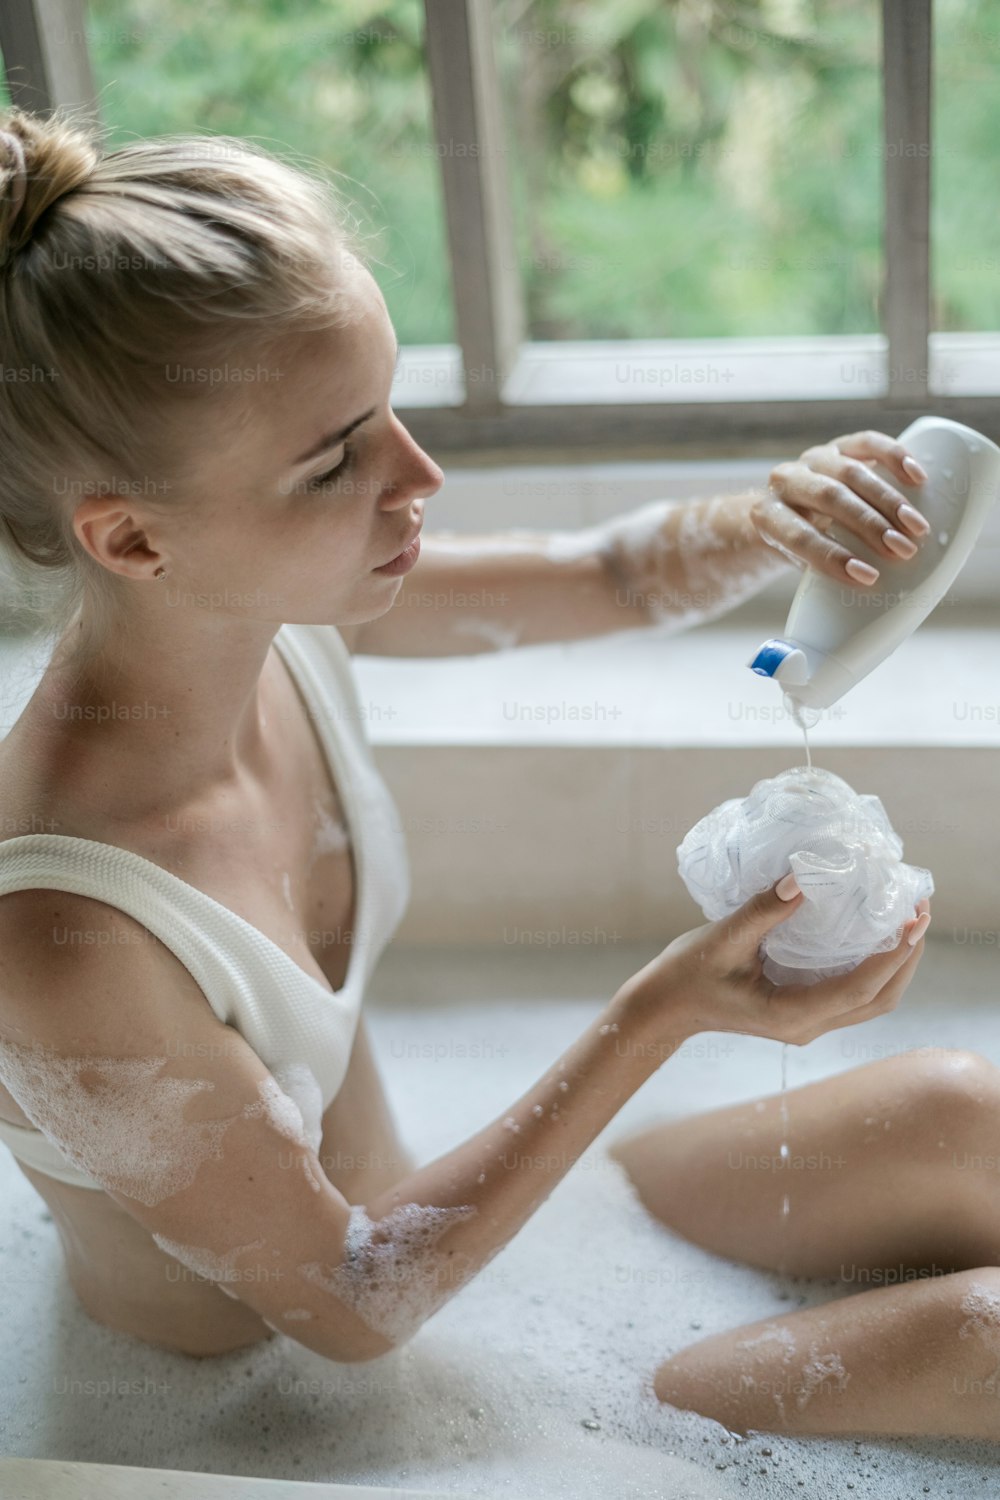 Concetto di cura della pelle. Foto verticale di giovane ragazza adulta che fa il bagno, versando gel doccia sulla spugna, sdraiata in acqua saponata a bolle, godendo della procedura di routine mattutina